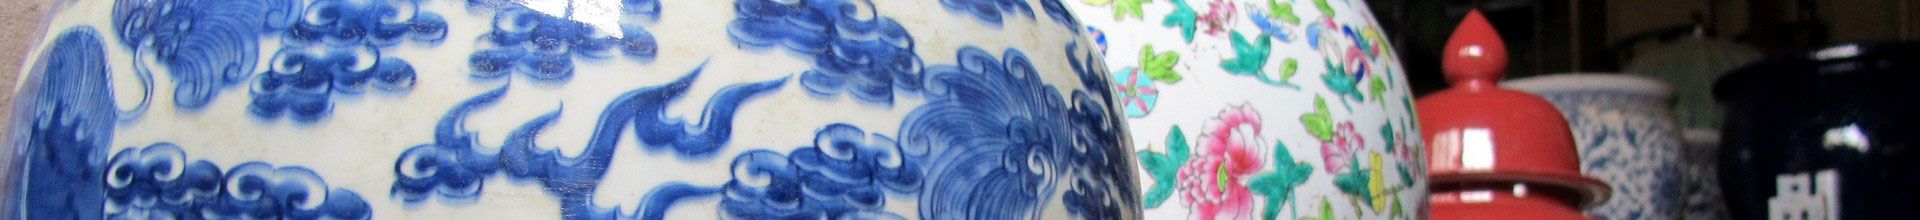 Chinesische Keramik und die Erfindung des Porzellans